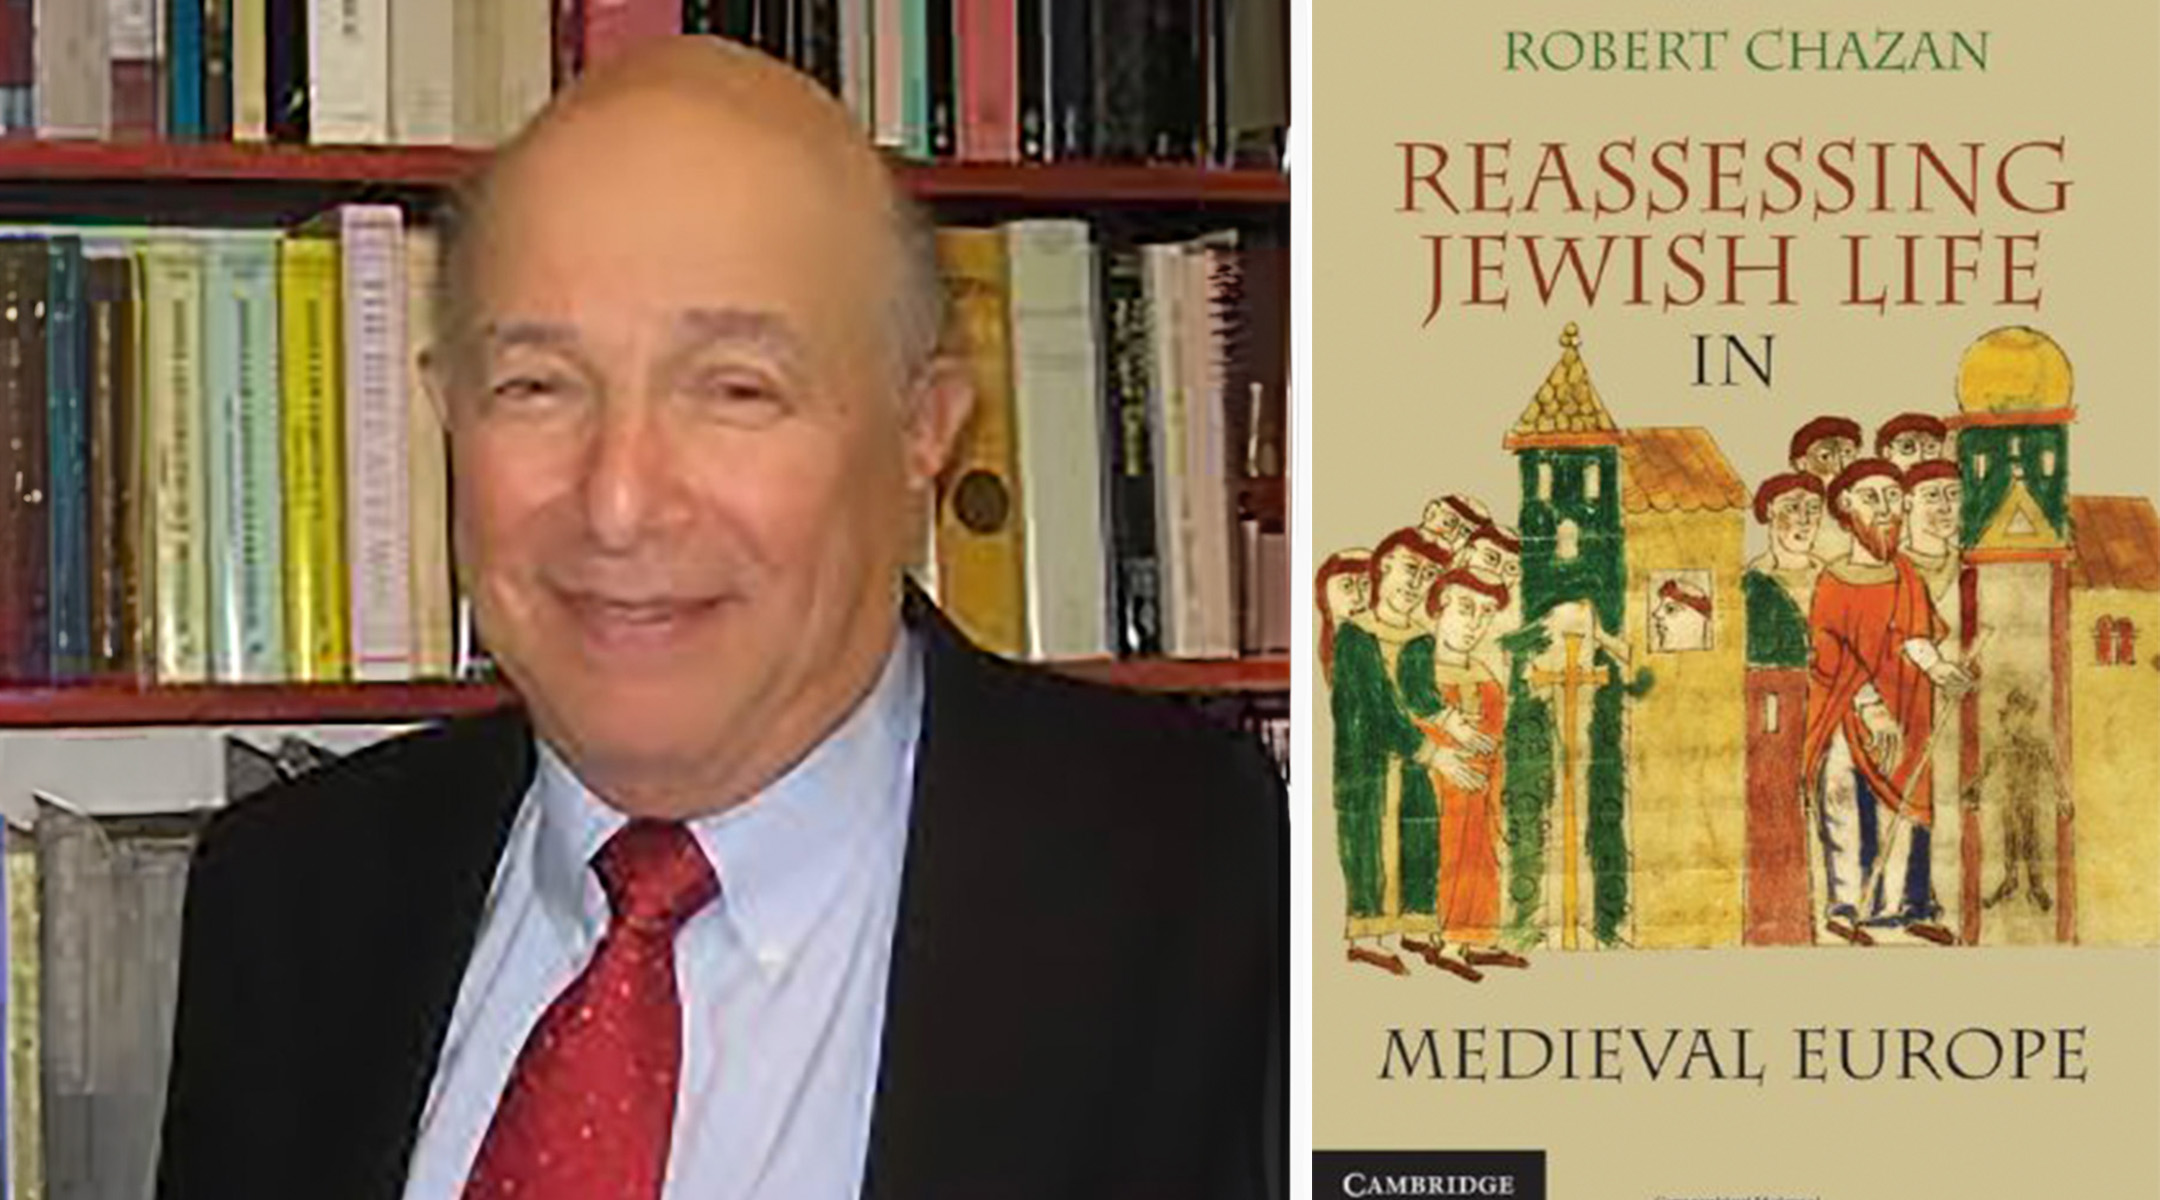 רוברט חזן, 87, חוקר יהדות ימי הביניים של ניו יורק, שעזר לבנות תחום לימודי יהדות